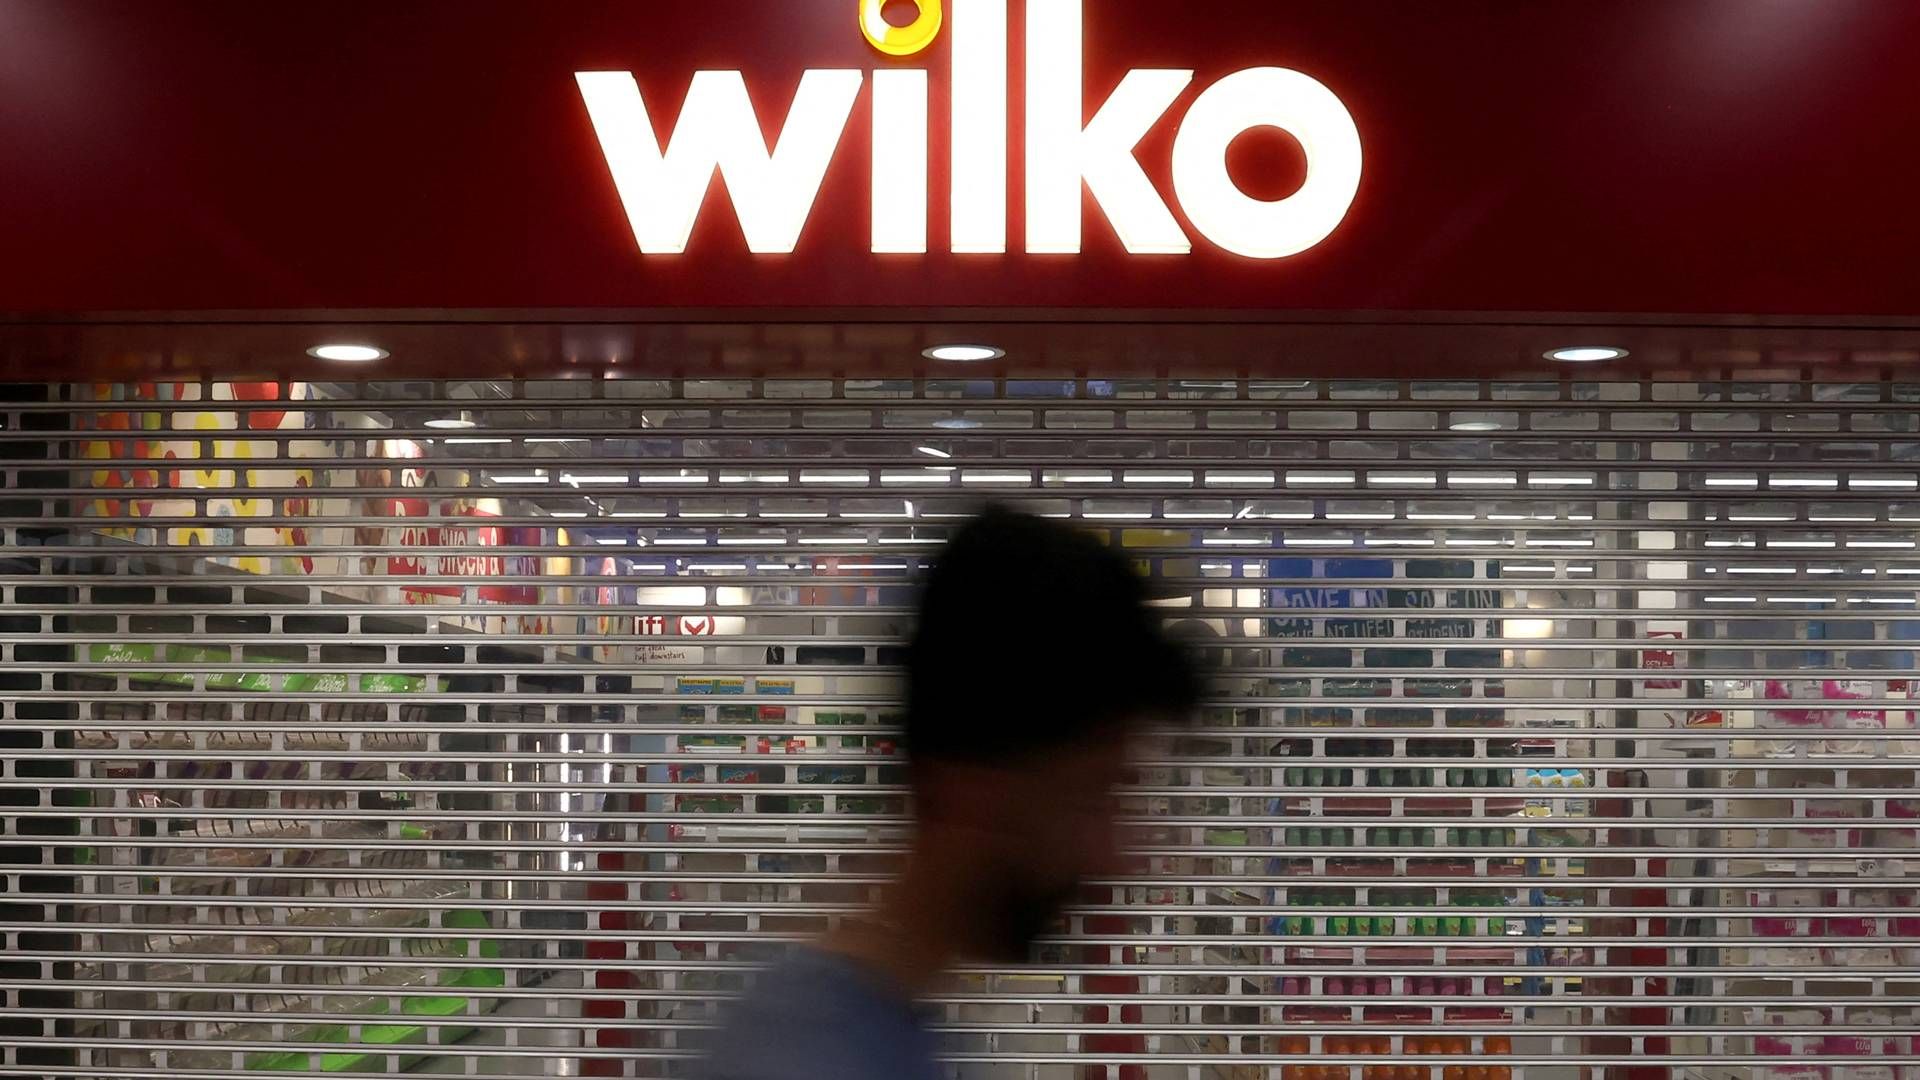 Wilko-kæden, bestående af omkring 400 butikker, har potentielt fået en ny livline. | Foto: Toby Melville